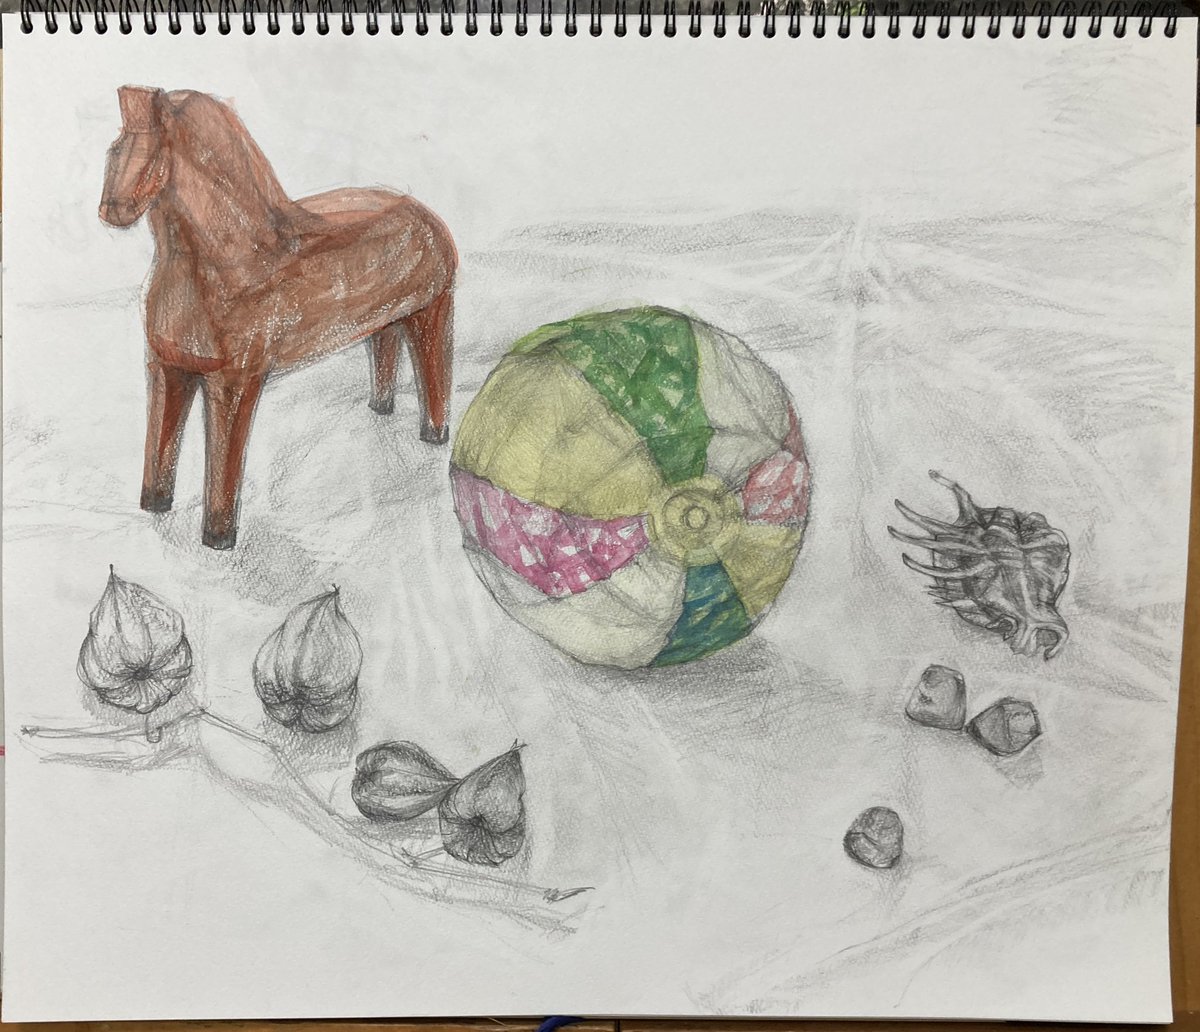 RT @AuTqqq59: #日々描く #デッサン #静物画 #水彩画 紙風船と木彫りの馬、鬼灯、貝殻、ガラスの置物。なんとか完成。本日も余裕なくギリギリ。モチーフに気に入ったもの選んだけど構成に悩んで時間がかかった。課題だな…。